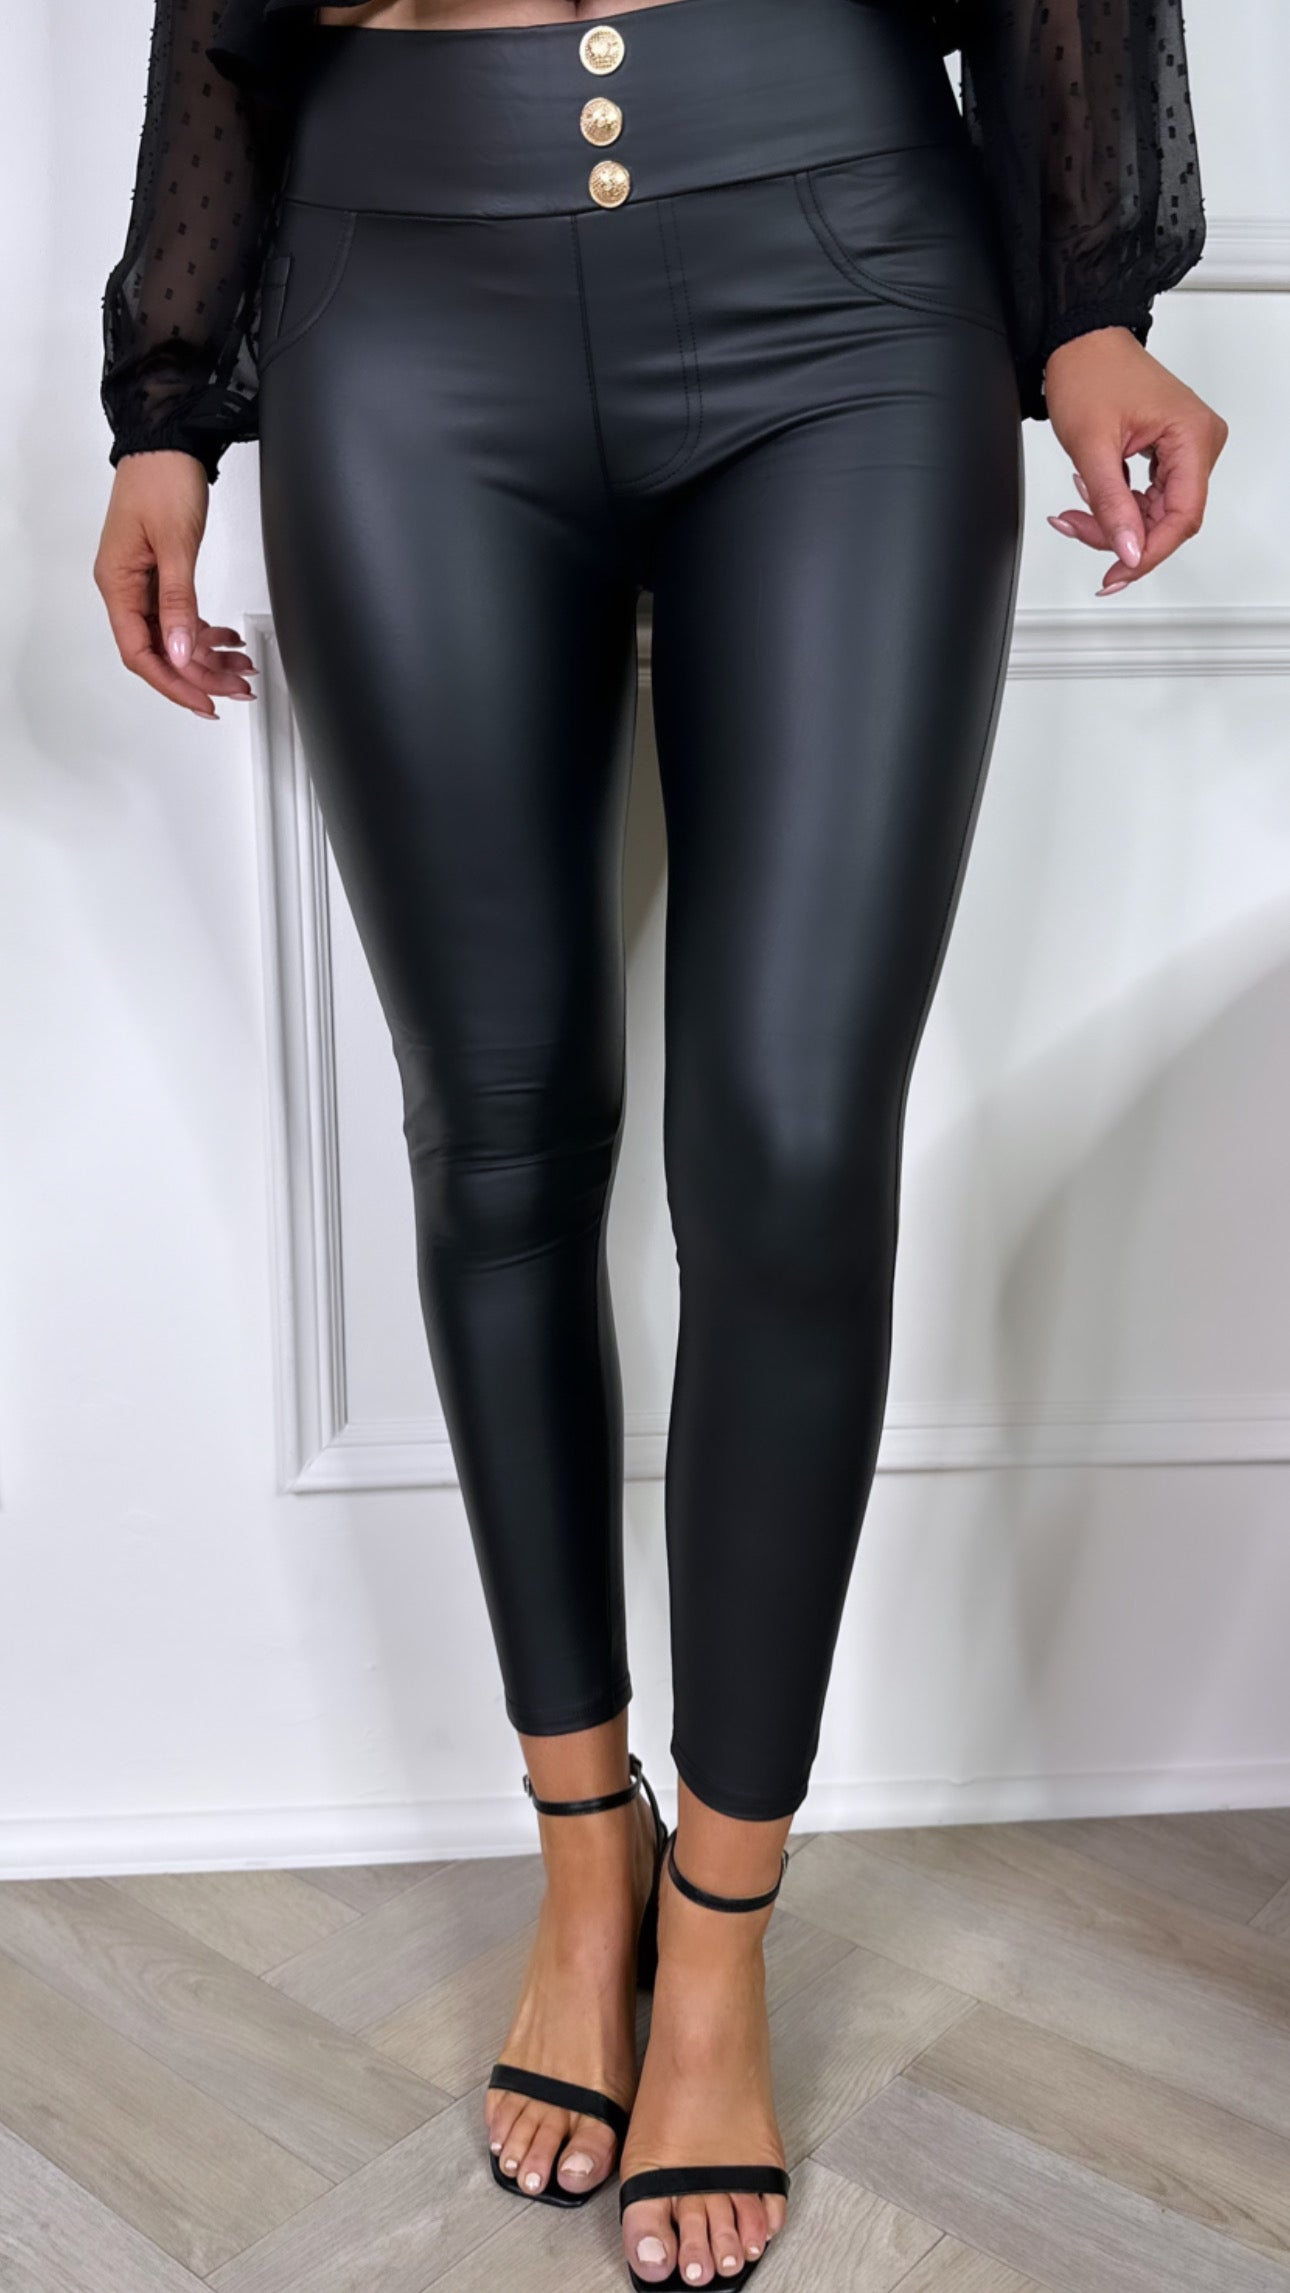 Ladies Leather Look Fitness Leggings, Black Sexy Leggings